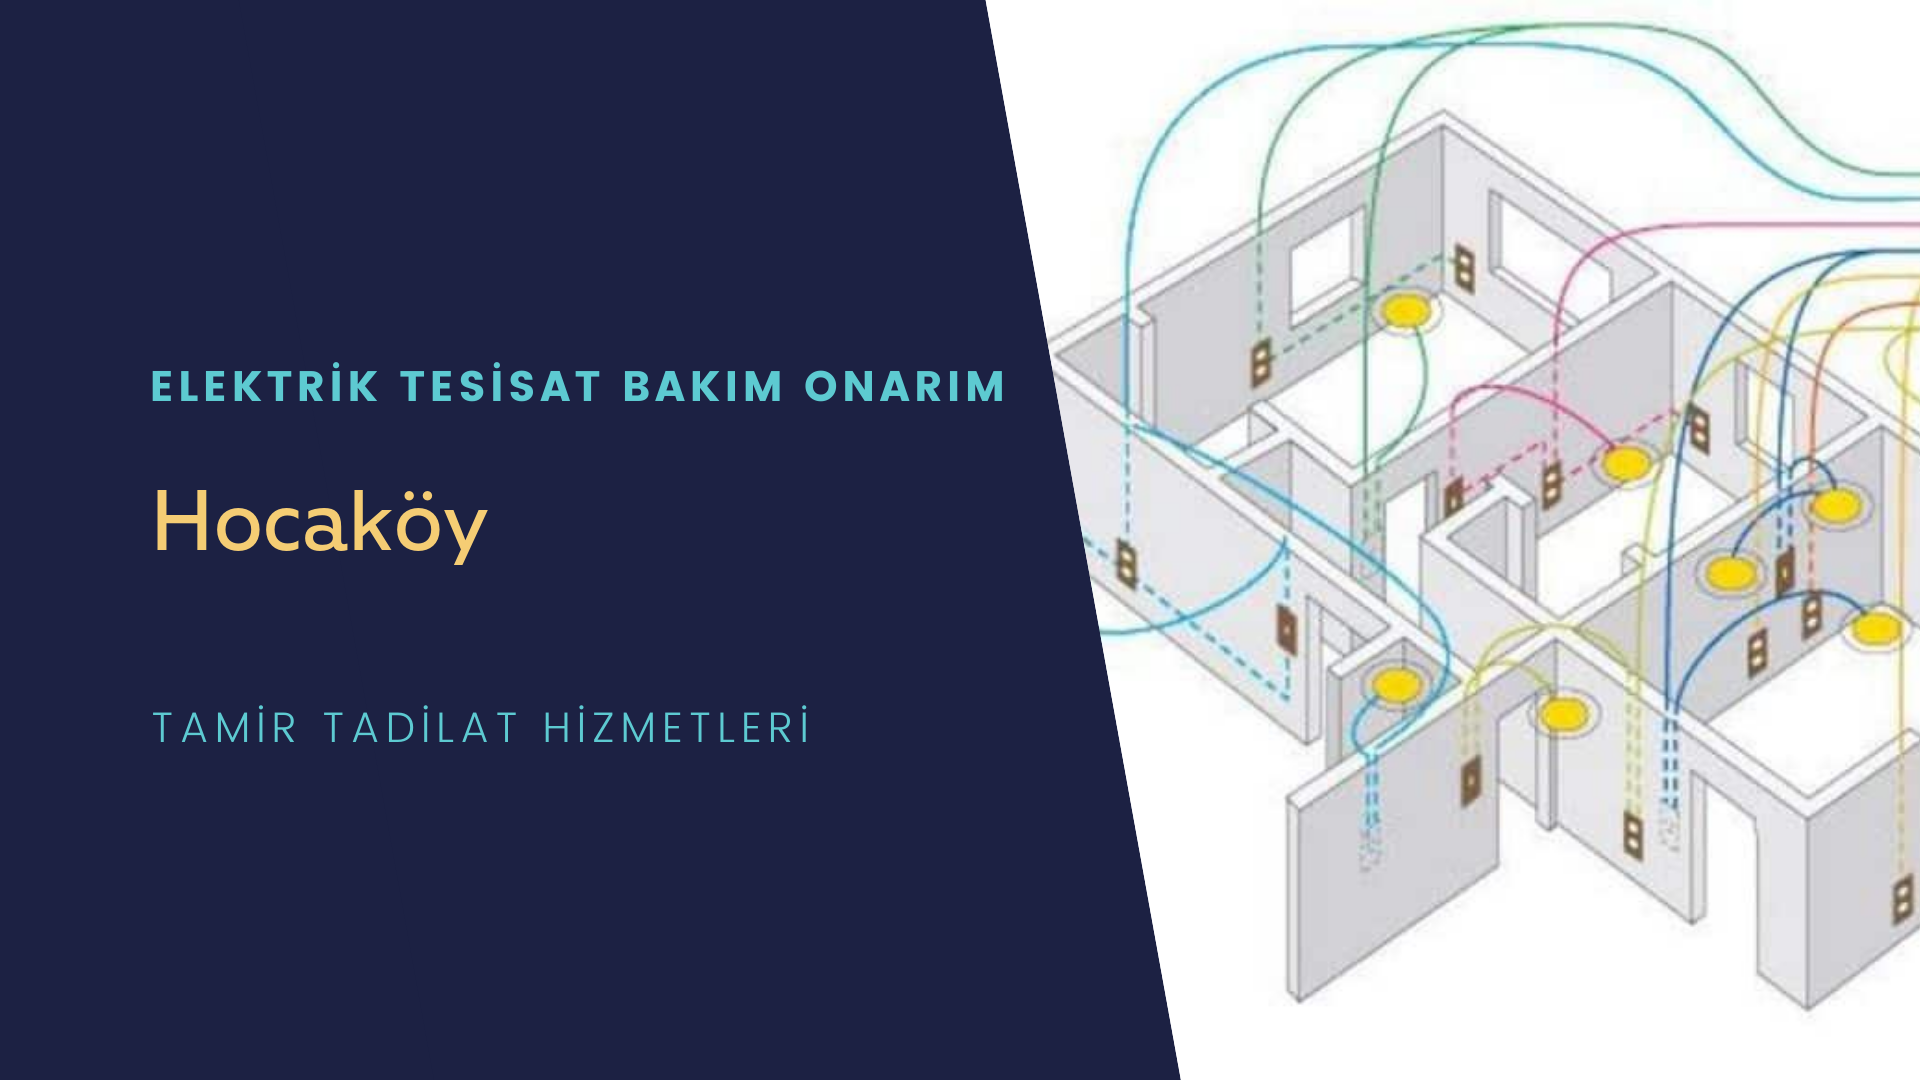 Hocaköy'de elektrik tesisatı ustalarımı arıyorsunuz doğru adrestenizi Hocaköy elektrik tesisatı ustalarımız 7/24 sizlere hizmet vermekten mutluluk duyar.